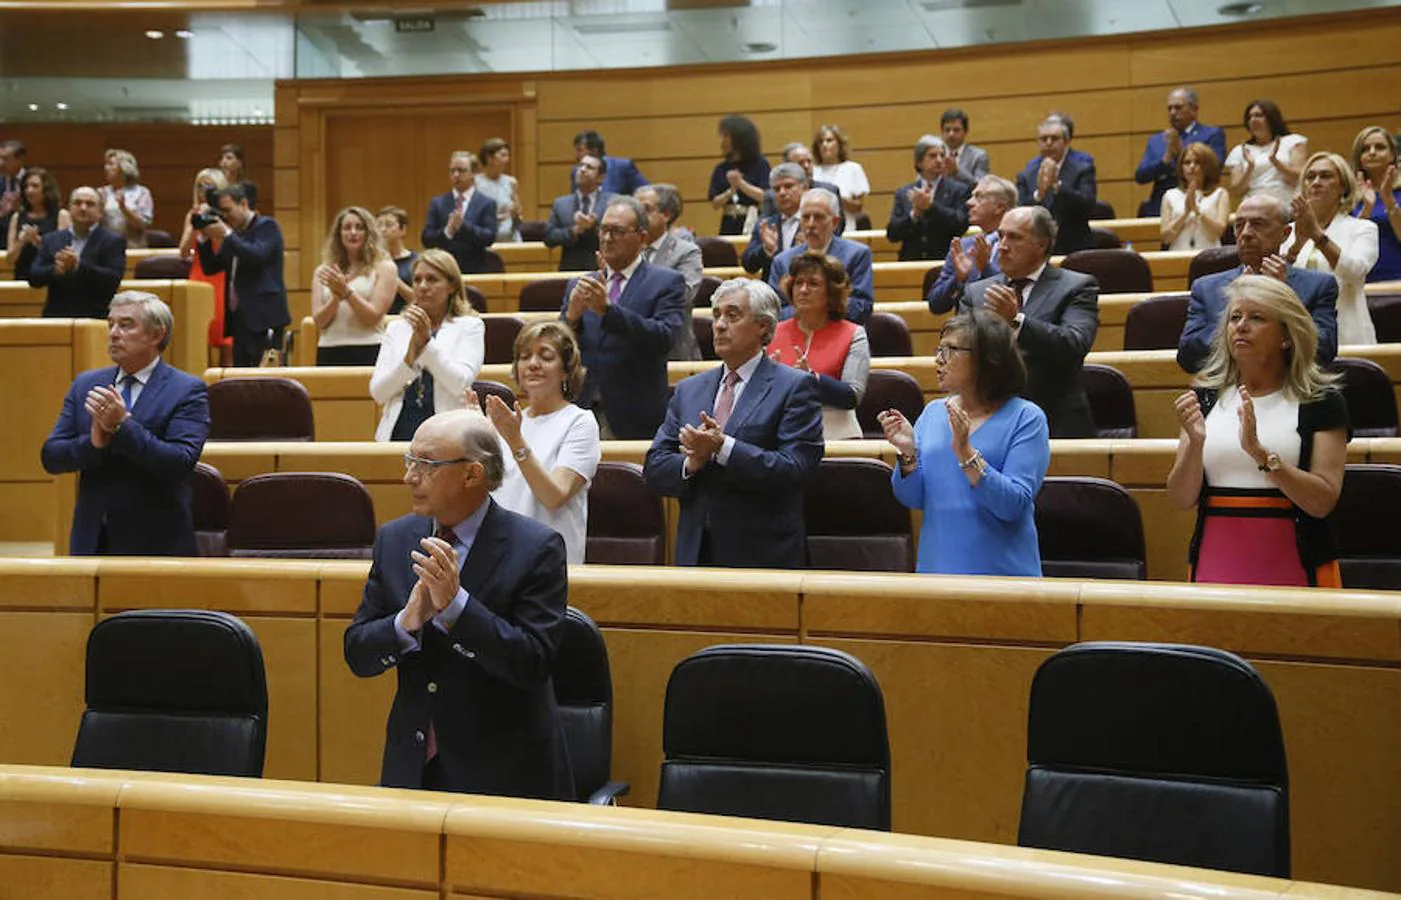 Minuto de silencio en el Senado en memoria de Miguel Ángel Blanco. Hoy se debate y vota el Acuerdo de objetivos de déficit y deuda pública de 2018-2020 y el límite de gasto no financiero de 2018